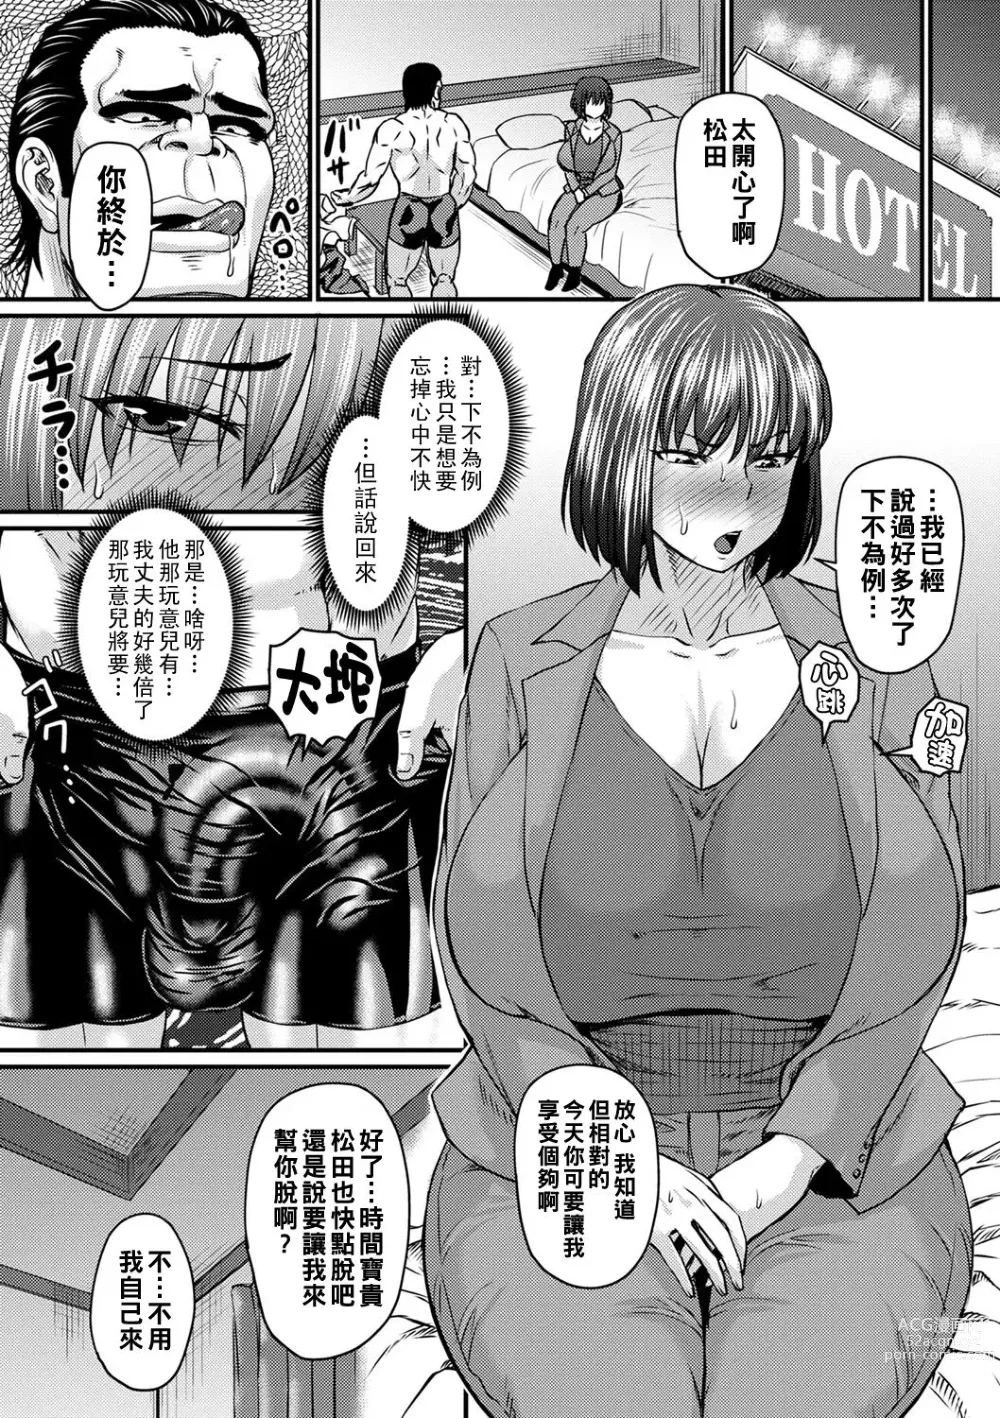 Page 7 of manga Uwaki no Susume